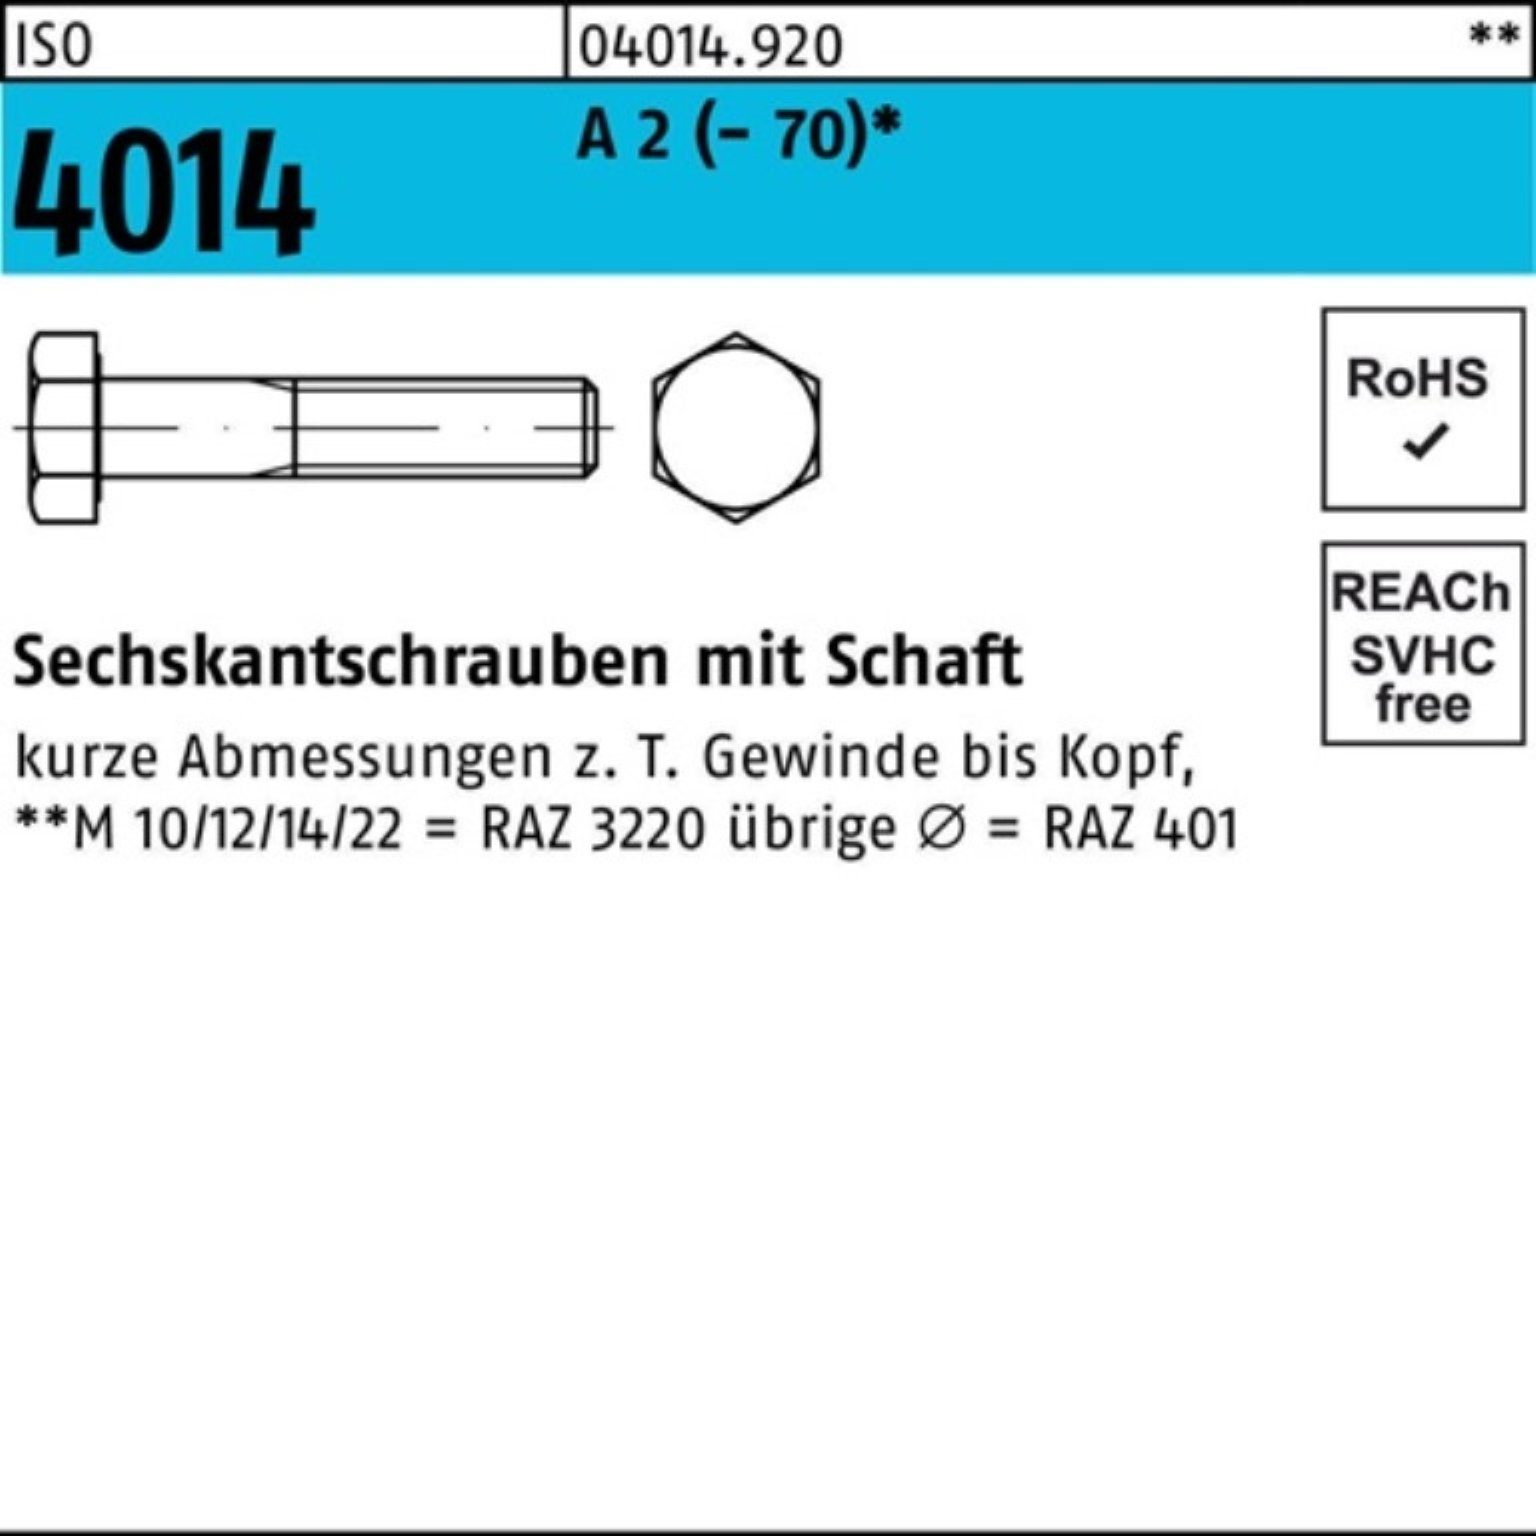 Bufab Sechskantschraube 100er Pack Sechskantschraube ISO 4014 Schaft M16x 130 A 2 (70) 1 St